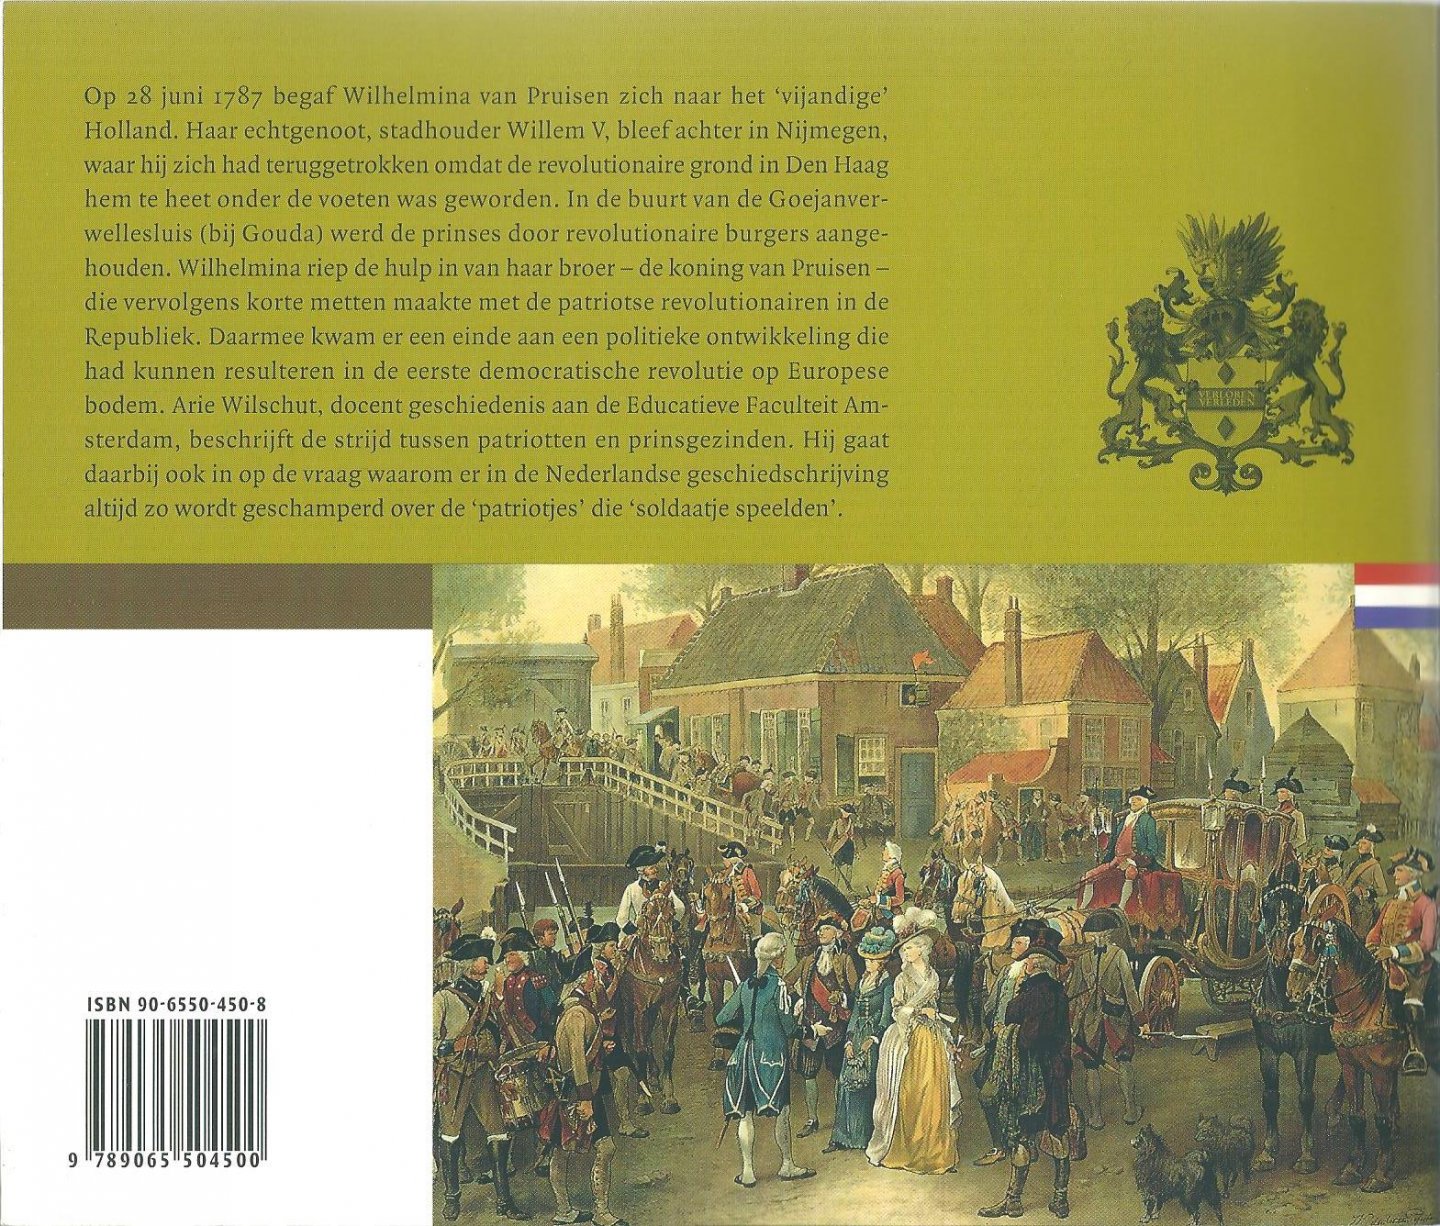 Wilschut, Arie - Goejanverwellesluis : de strijd tussen patriotten en prinsgezinden, 1780-1787